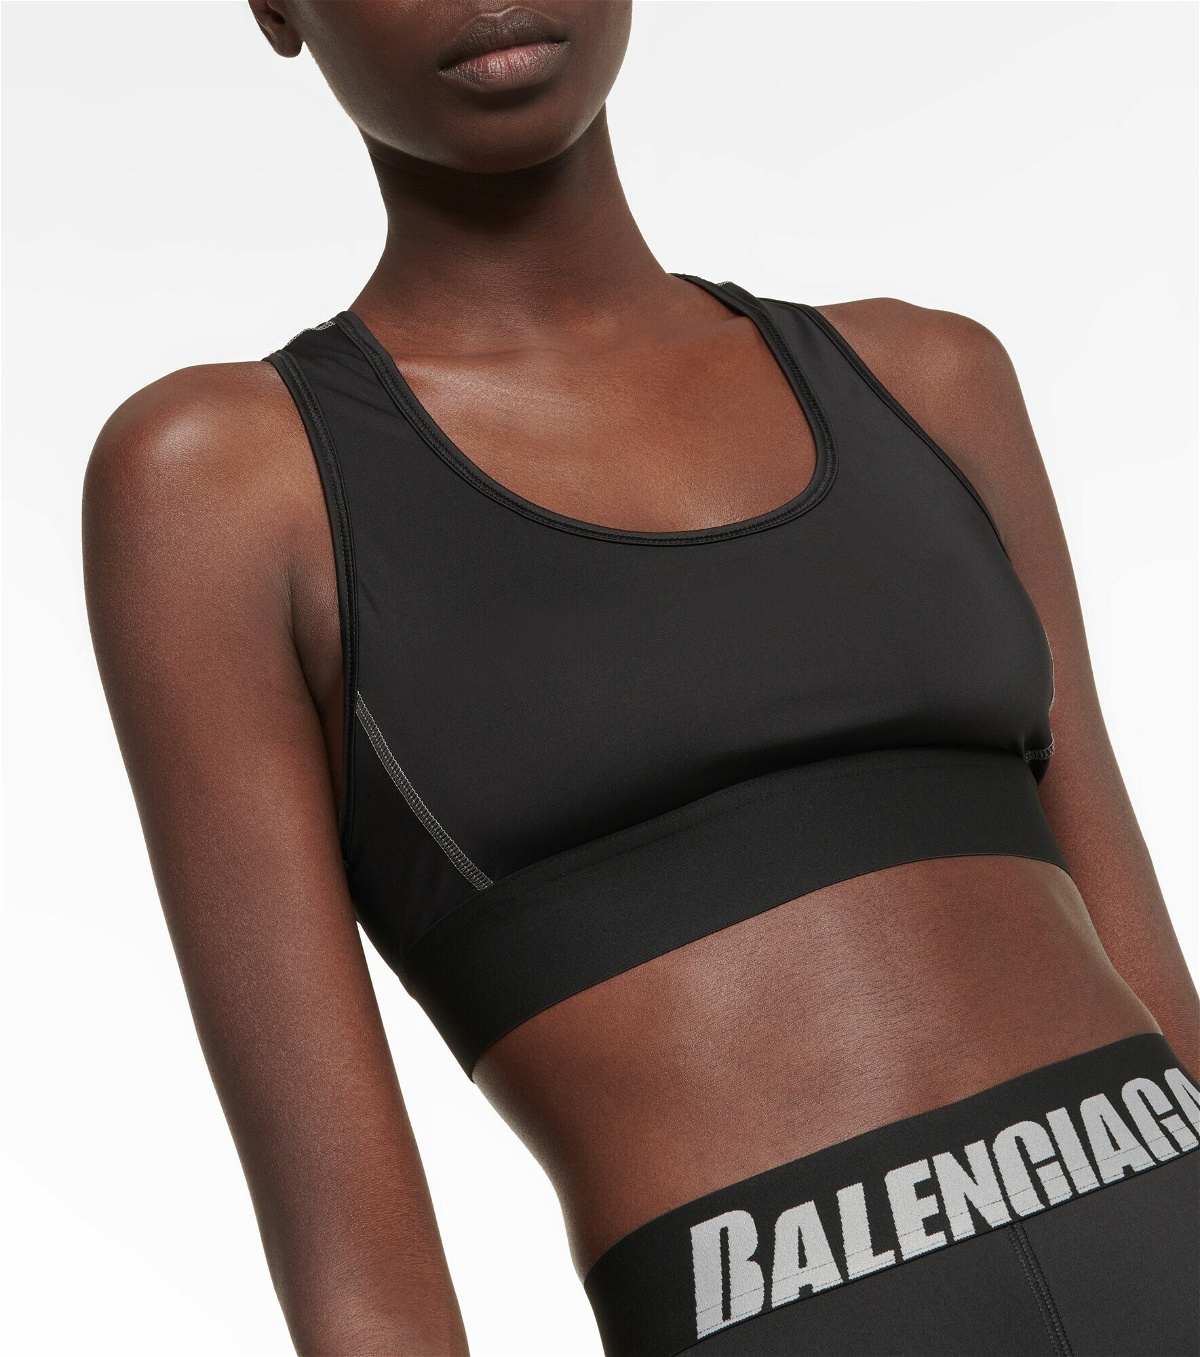 Balenciaga - Racerback sports bra Balenciaga